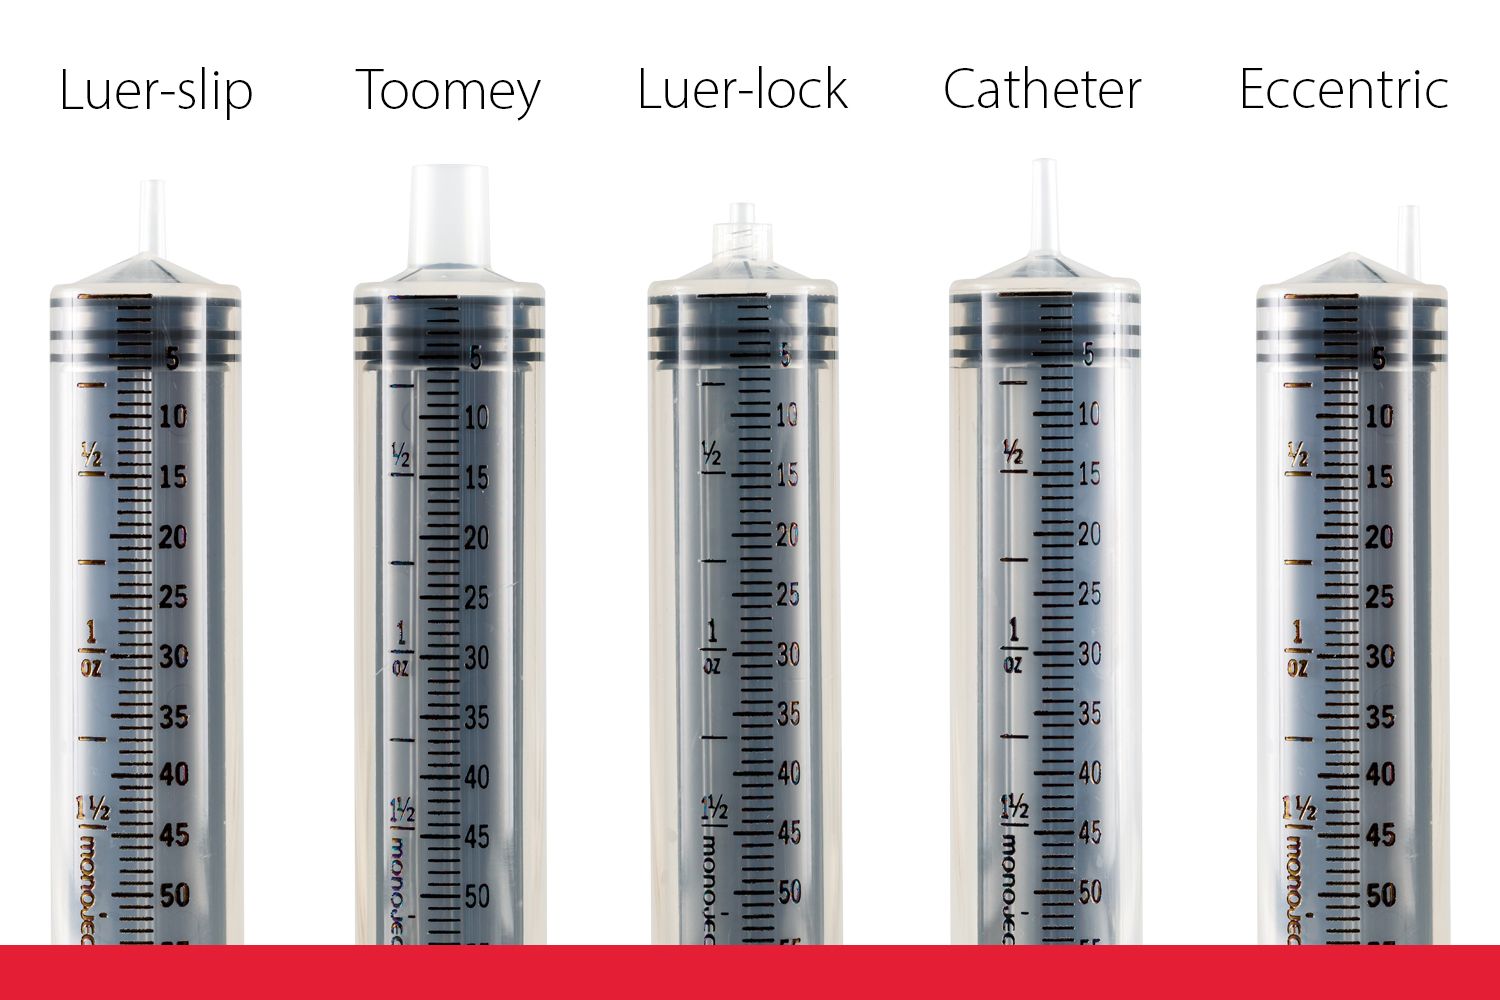 Syringe, Polypropylene, Luer Lock, 10mL, Non-Sterile, Bulk, pack/20